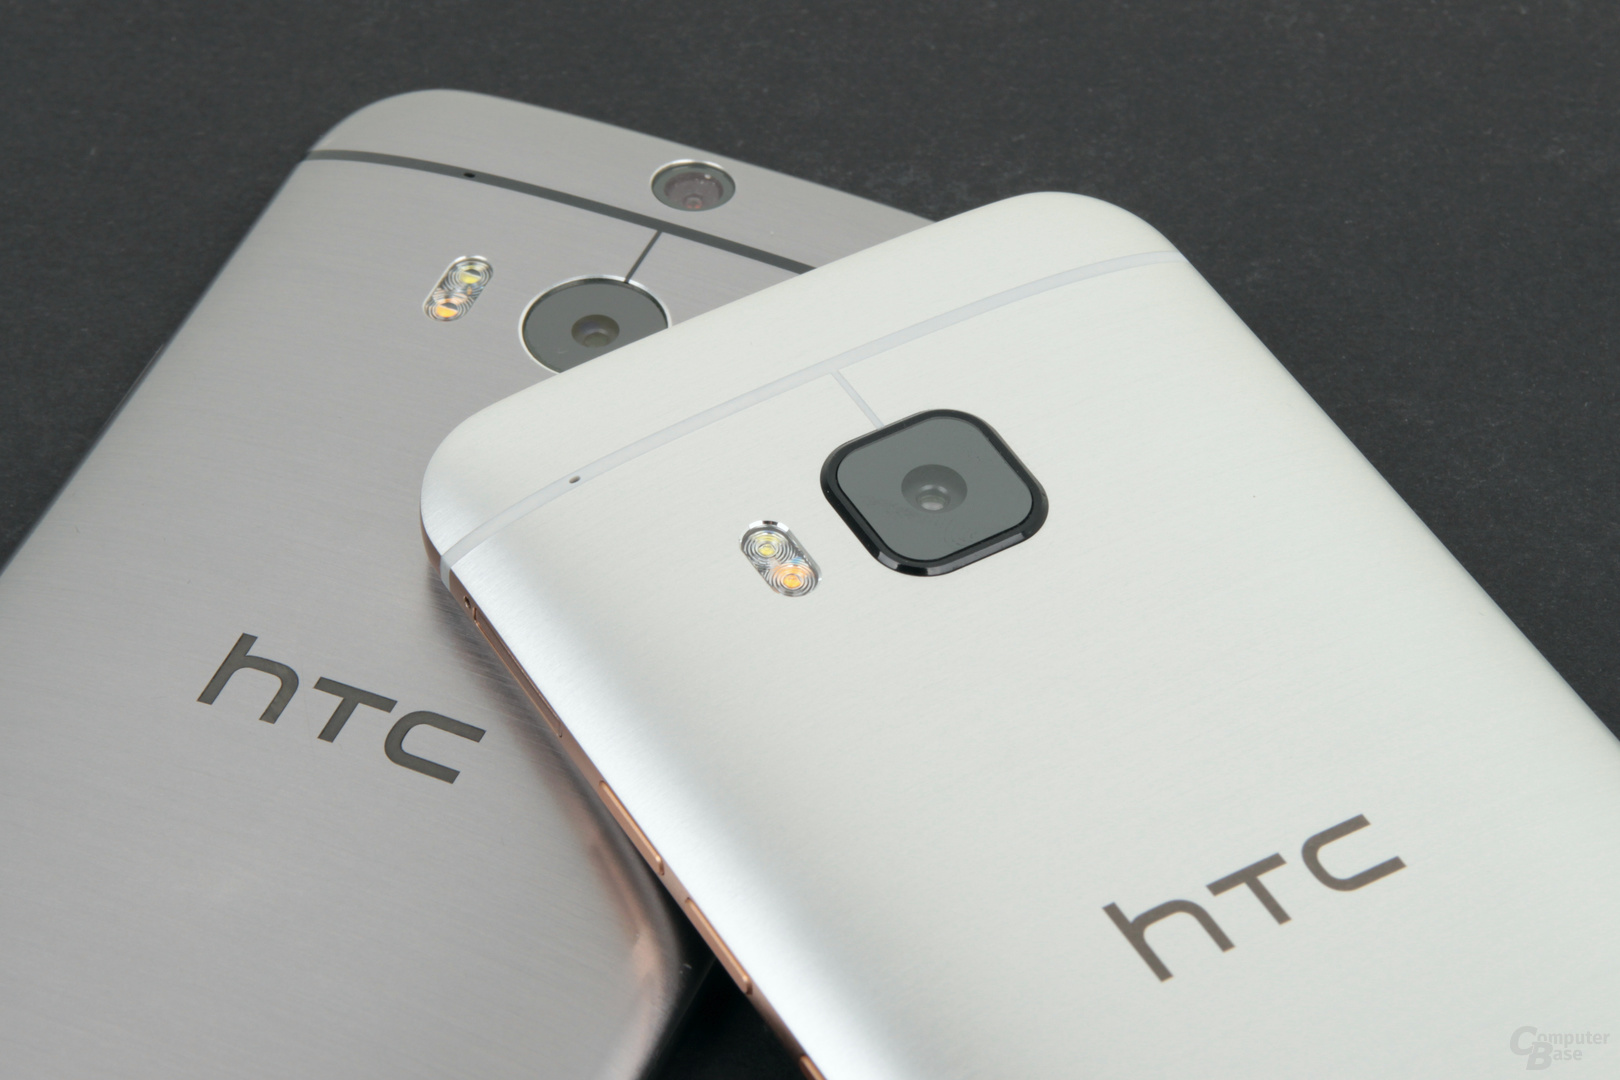 HTC One (M8) (links) und One M9